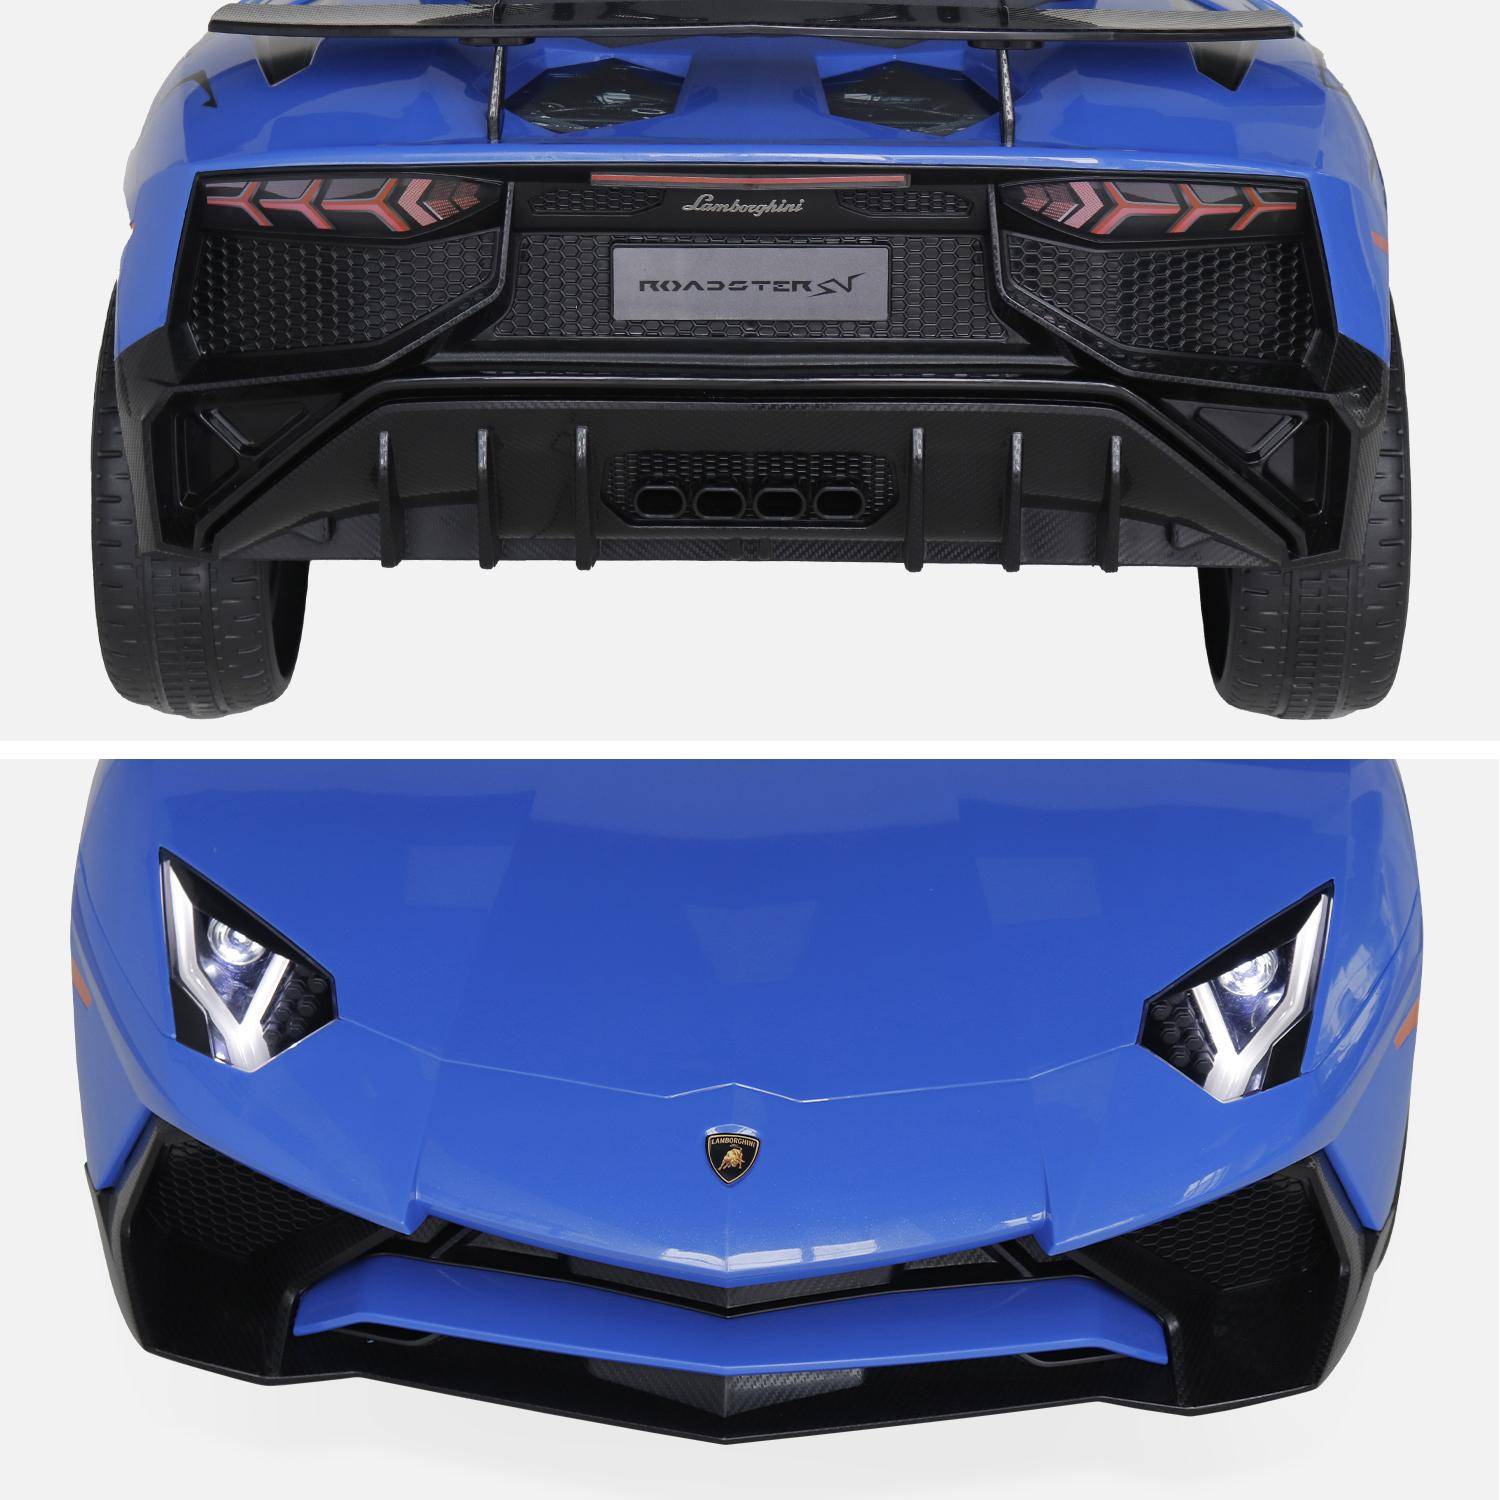 12V elektrische Lamborghini kinderauto, blauw, 1 zitplaats, met radio, afstandsbediening, MP3, USB-poort en functionele koplampen Photo8